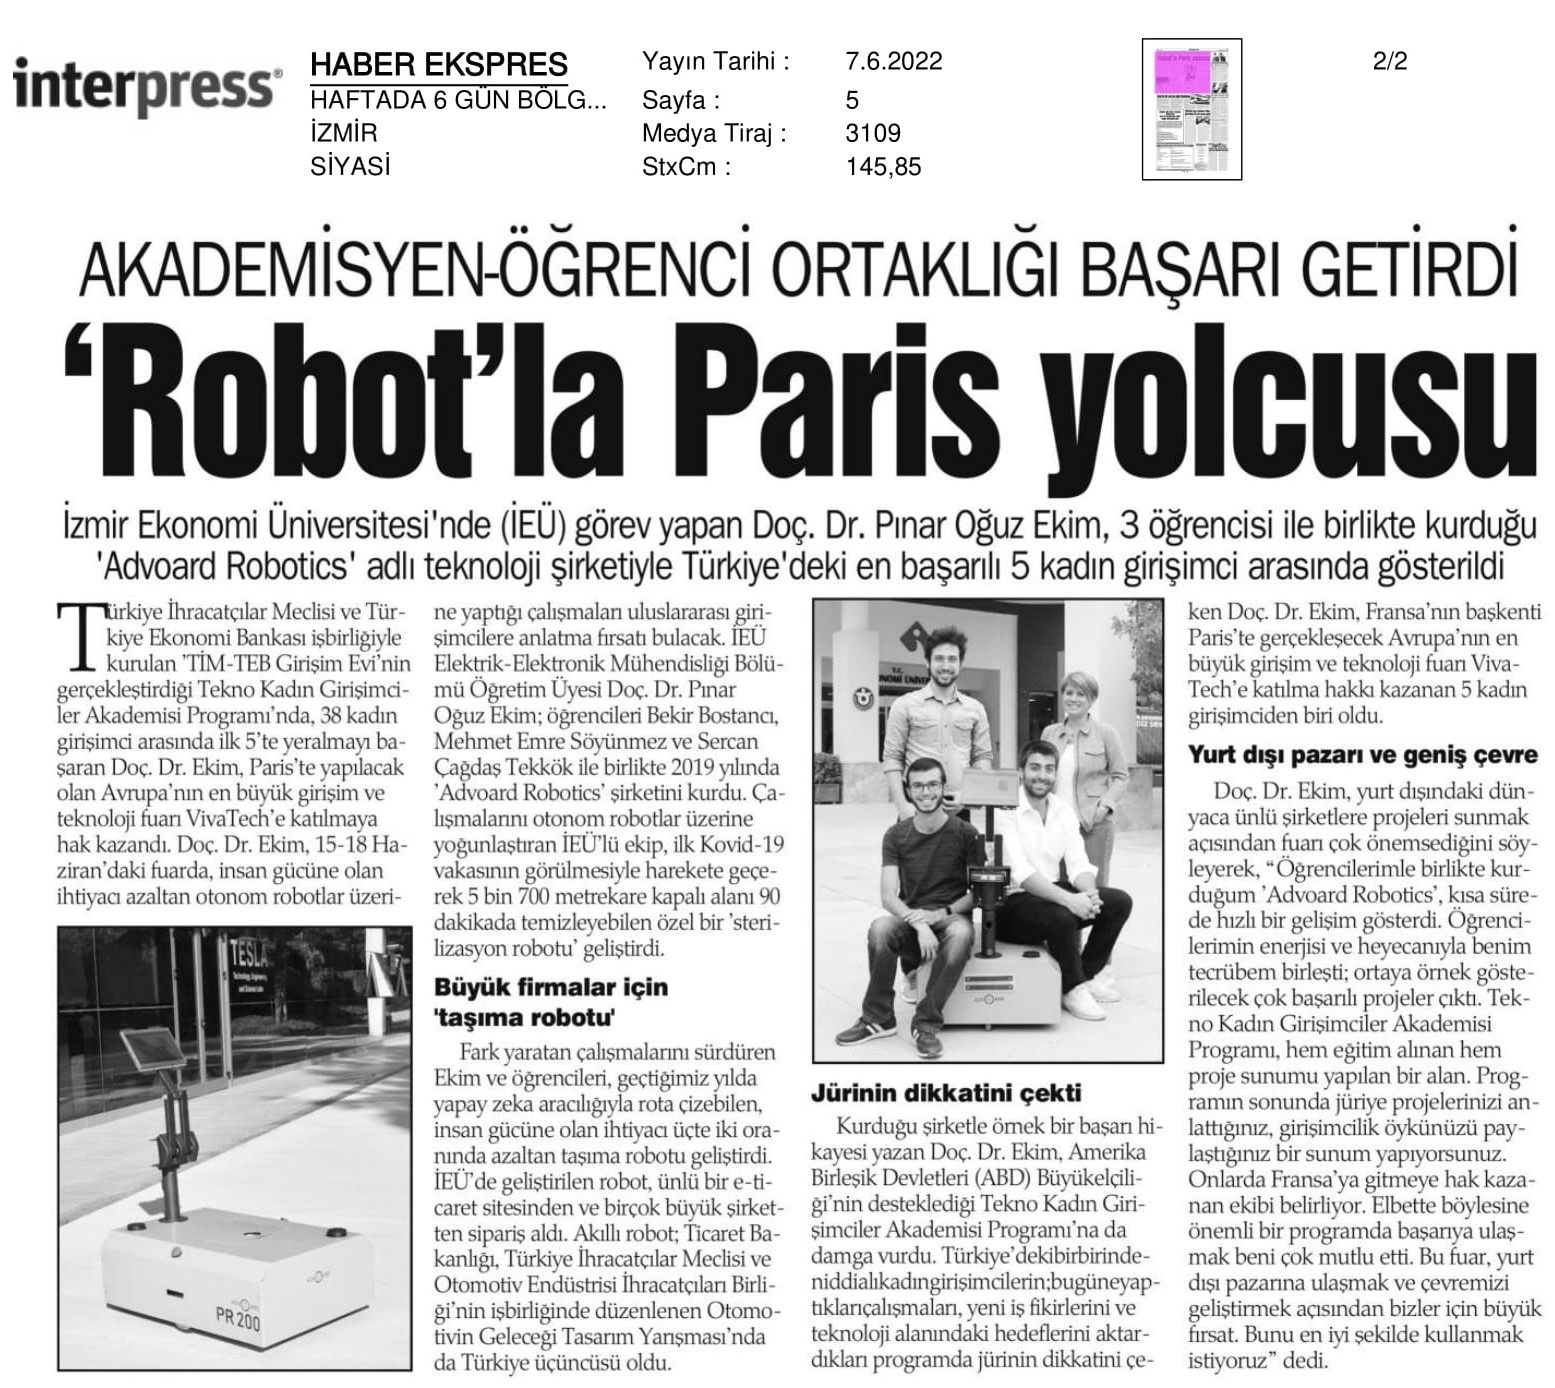 İRAN 2022

‘Robot’la Paris yolcusu
